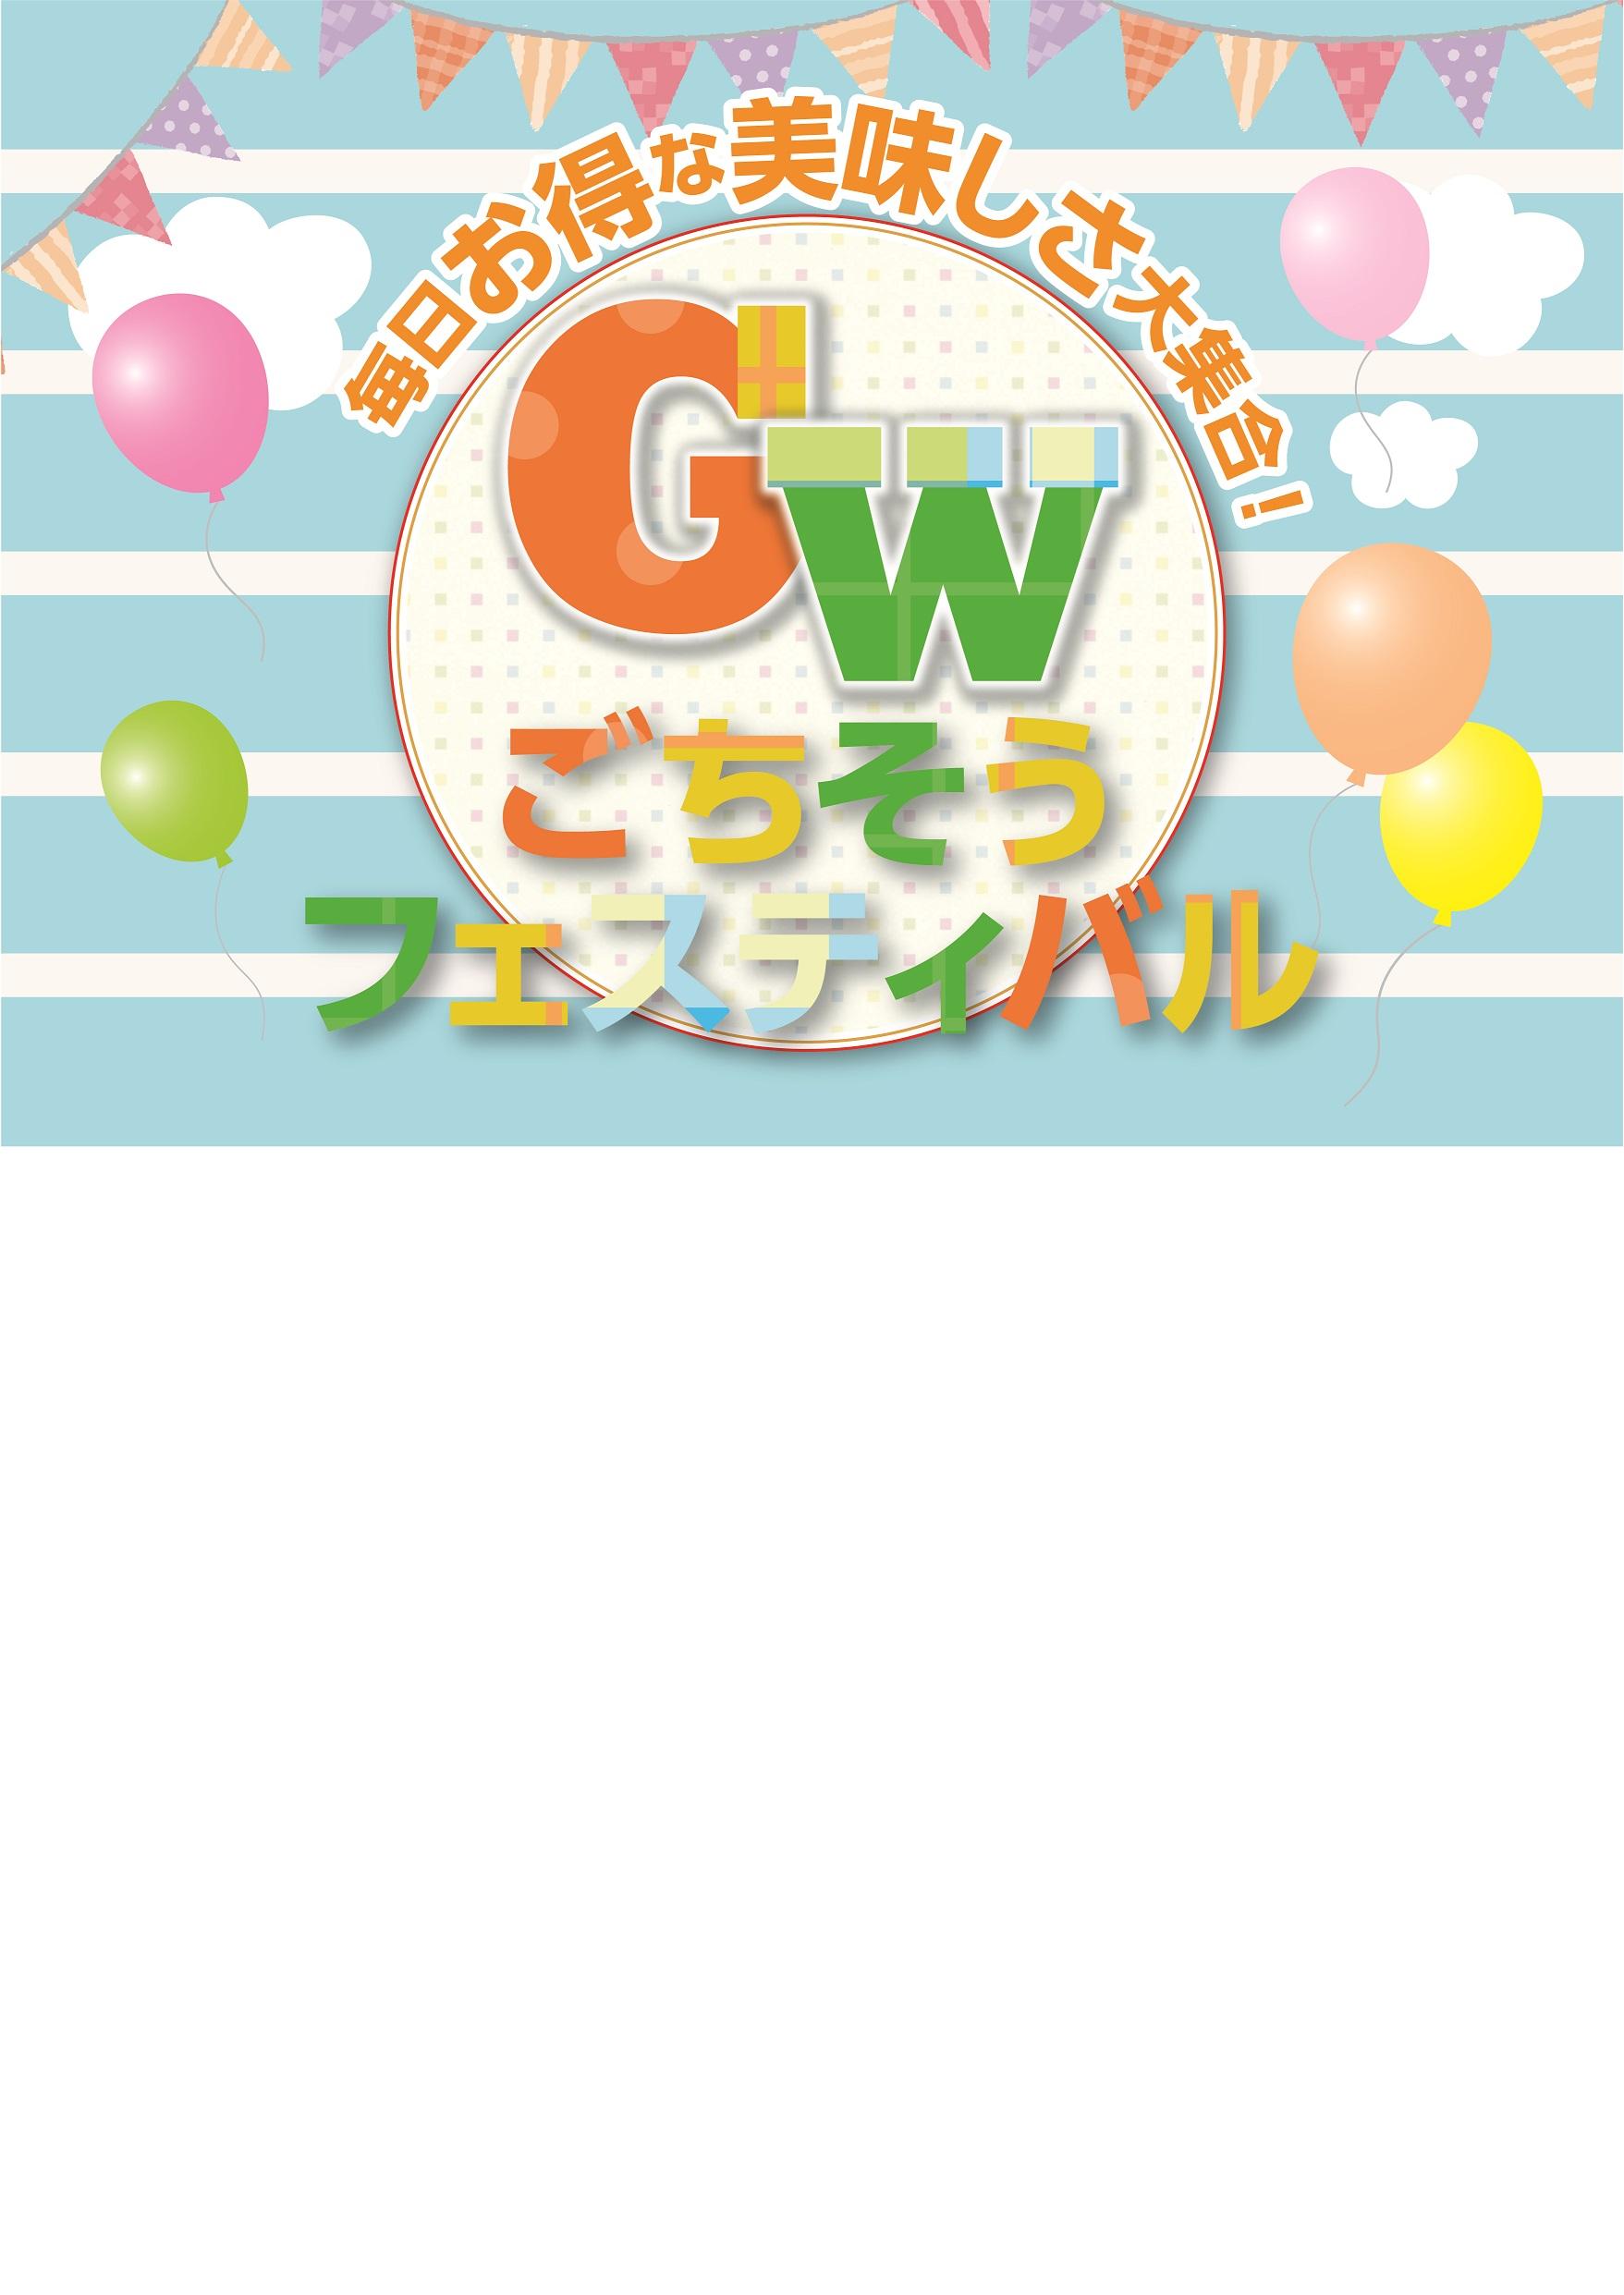  【モール食品館】GWごちそうフェスティバル